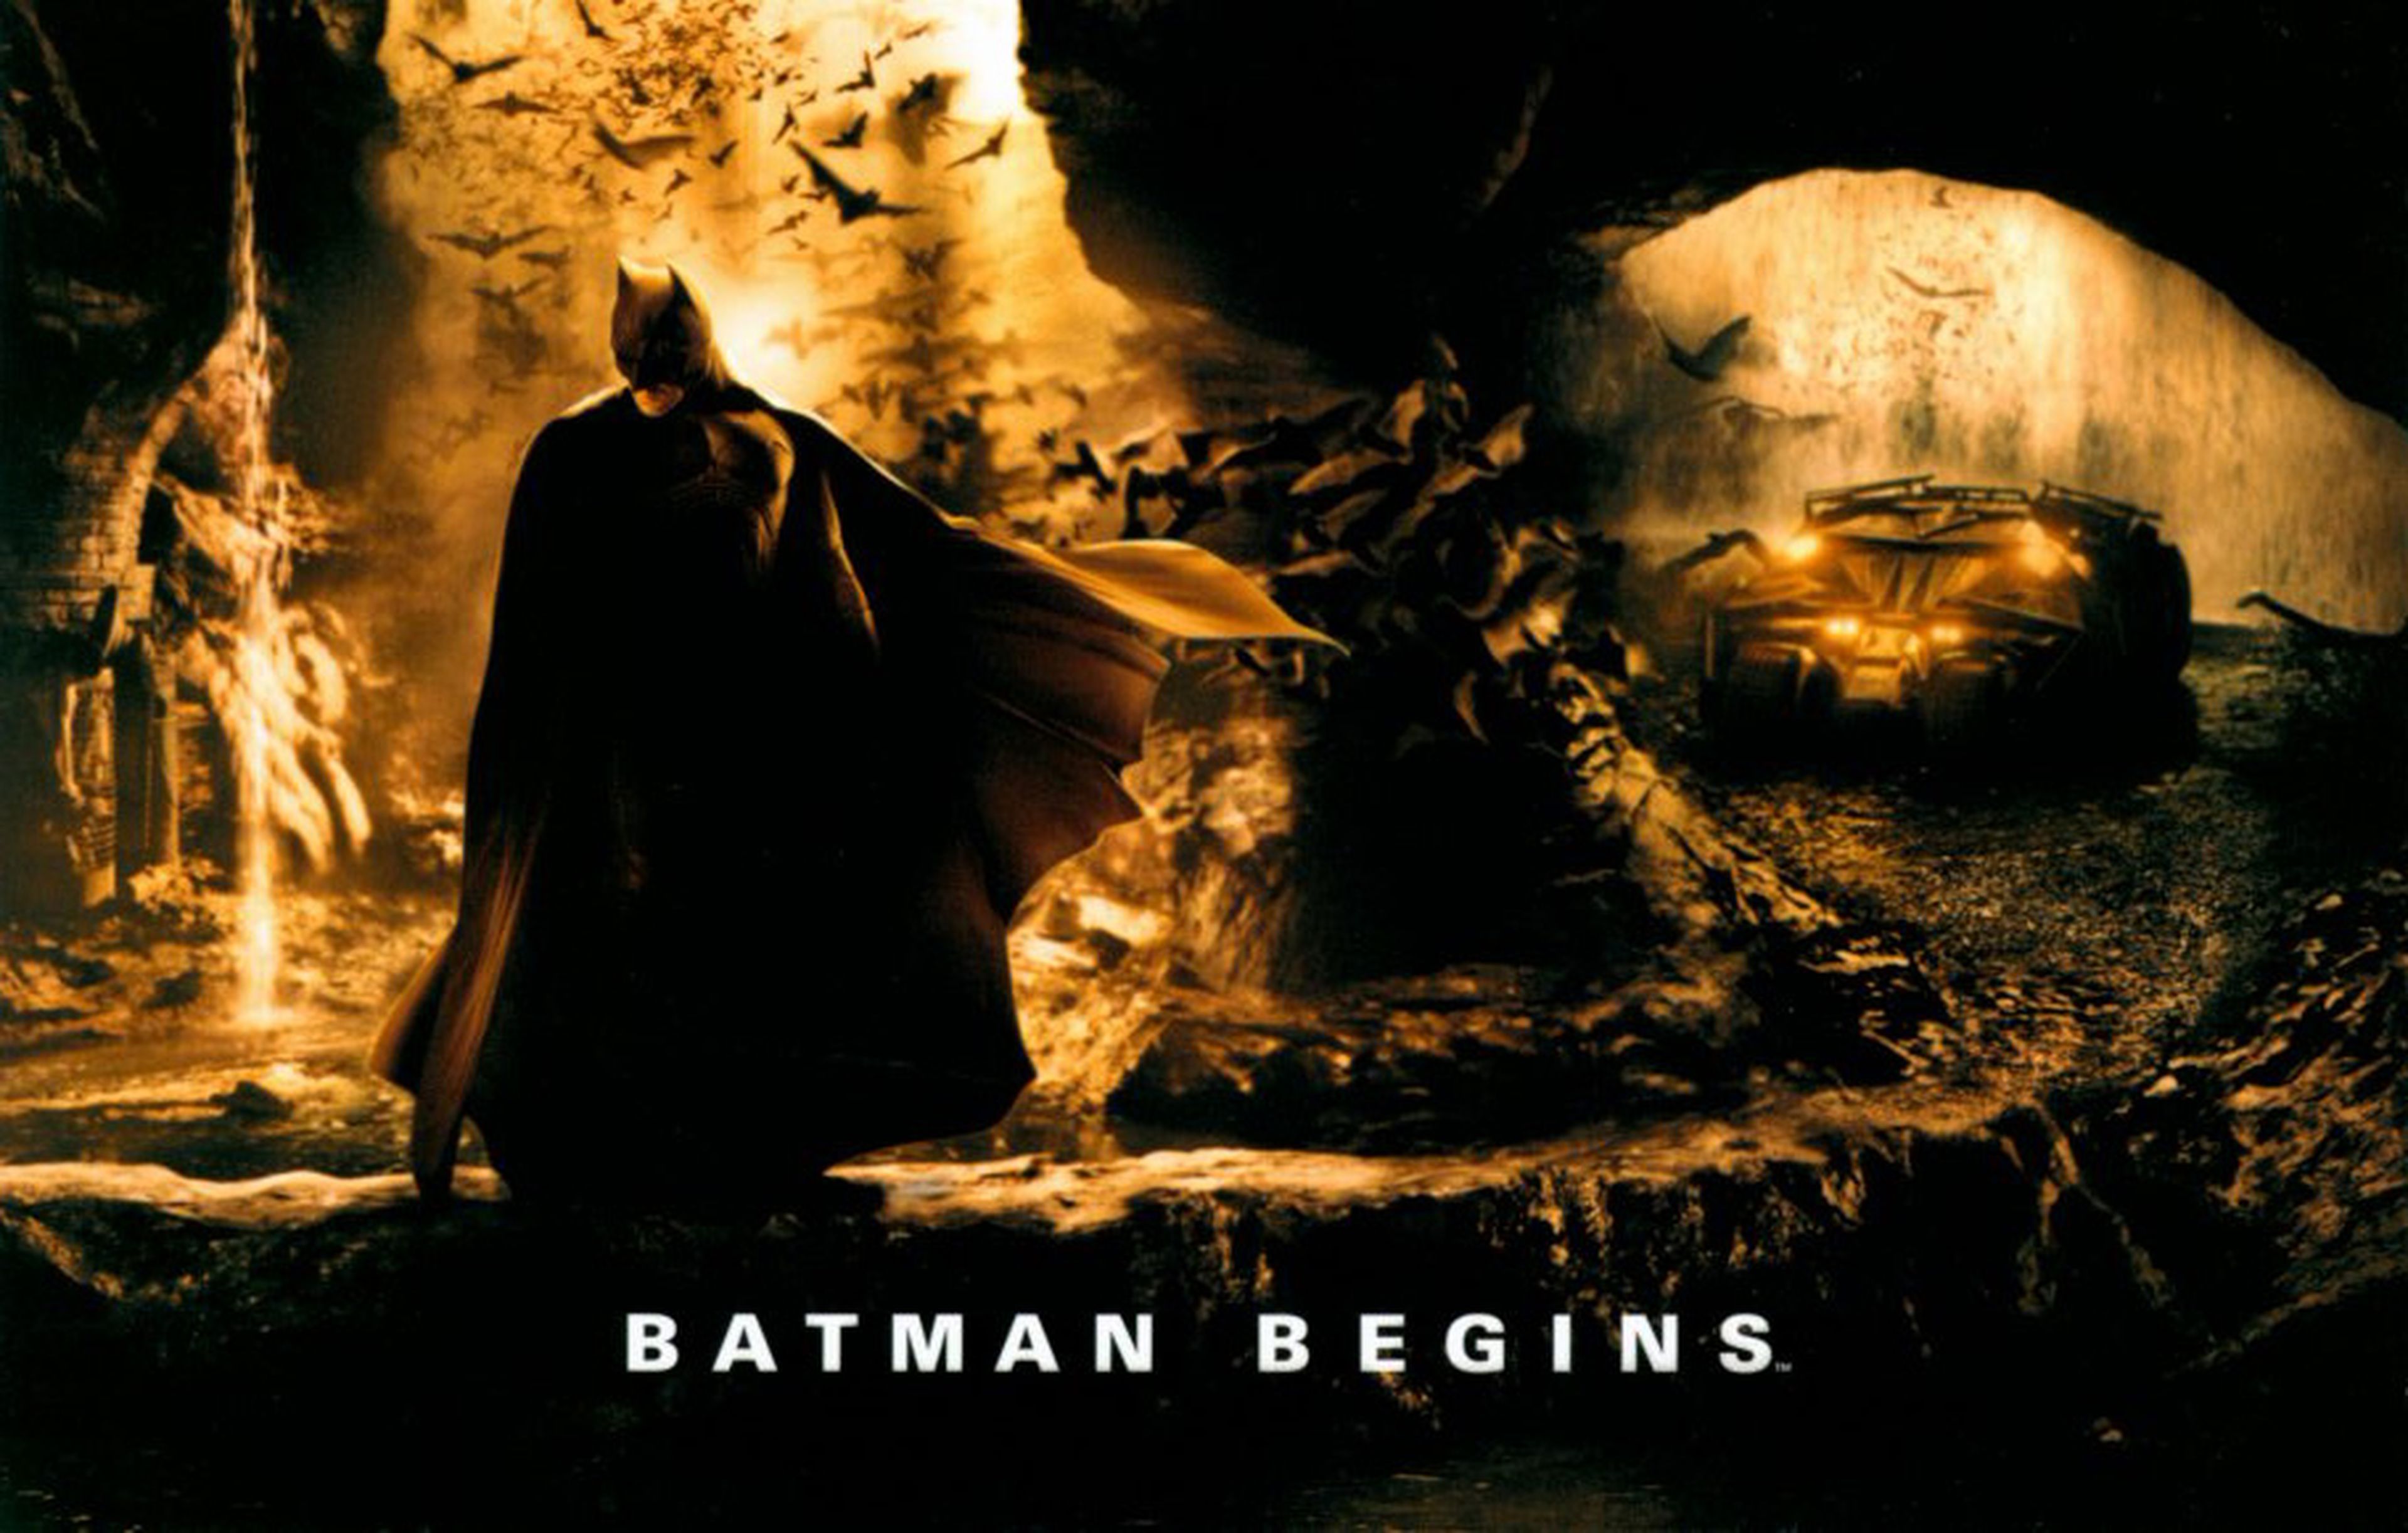 Cine de superhéroes: Crítica de Batman Begins